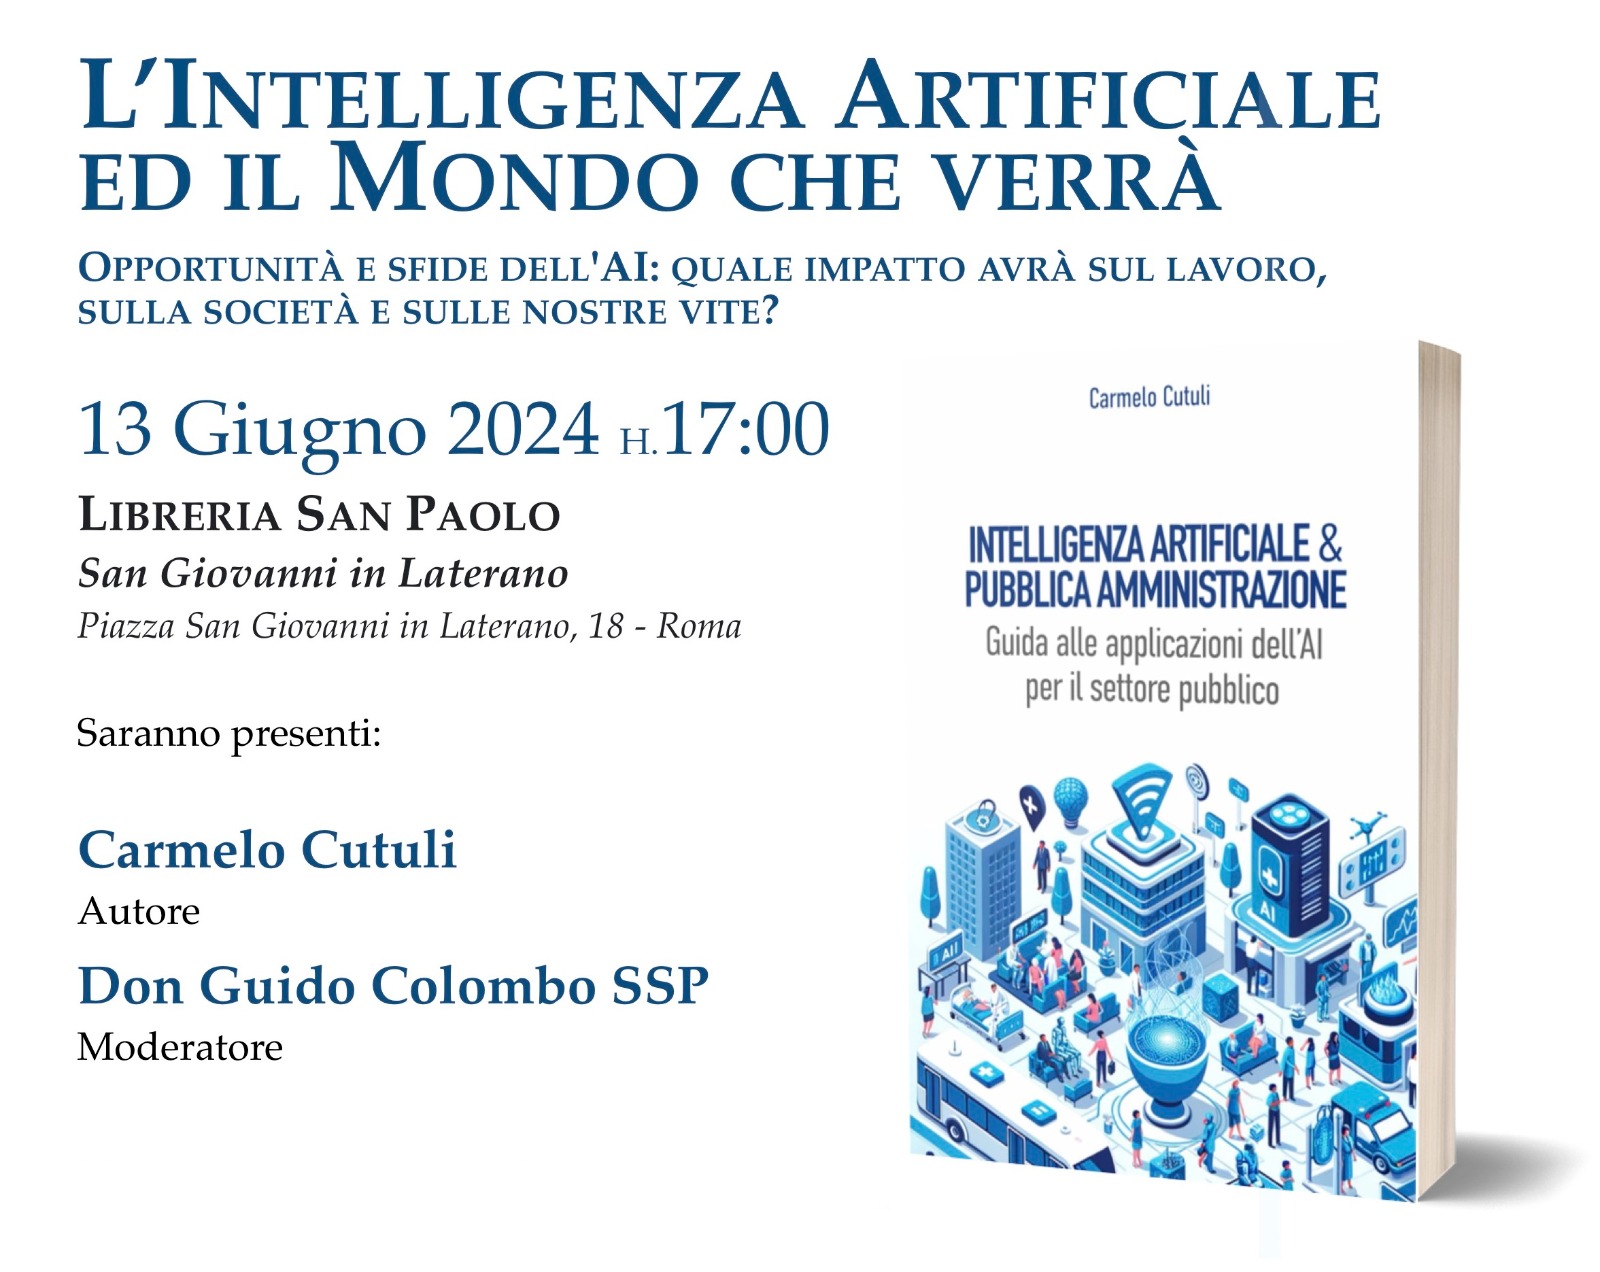 Presentazione del libro “Intelligenza Artificiale e Pubblica Amministrazione” alla Libreria San Paolo di San Giovanni in Laterano